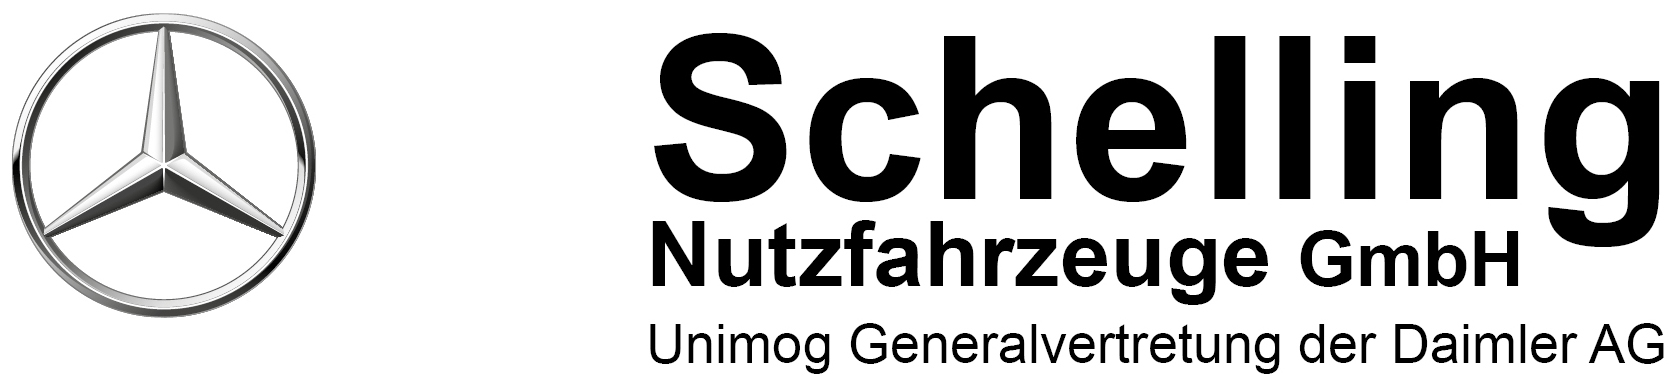 Schelling Nutzfahrzeuge GmbH